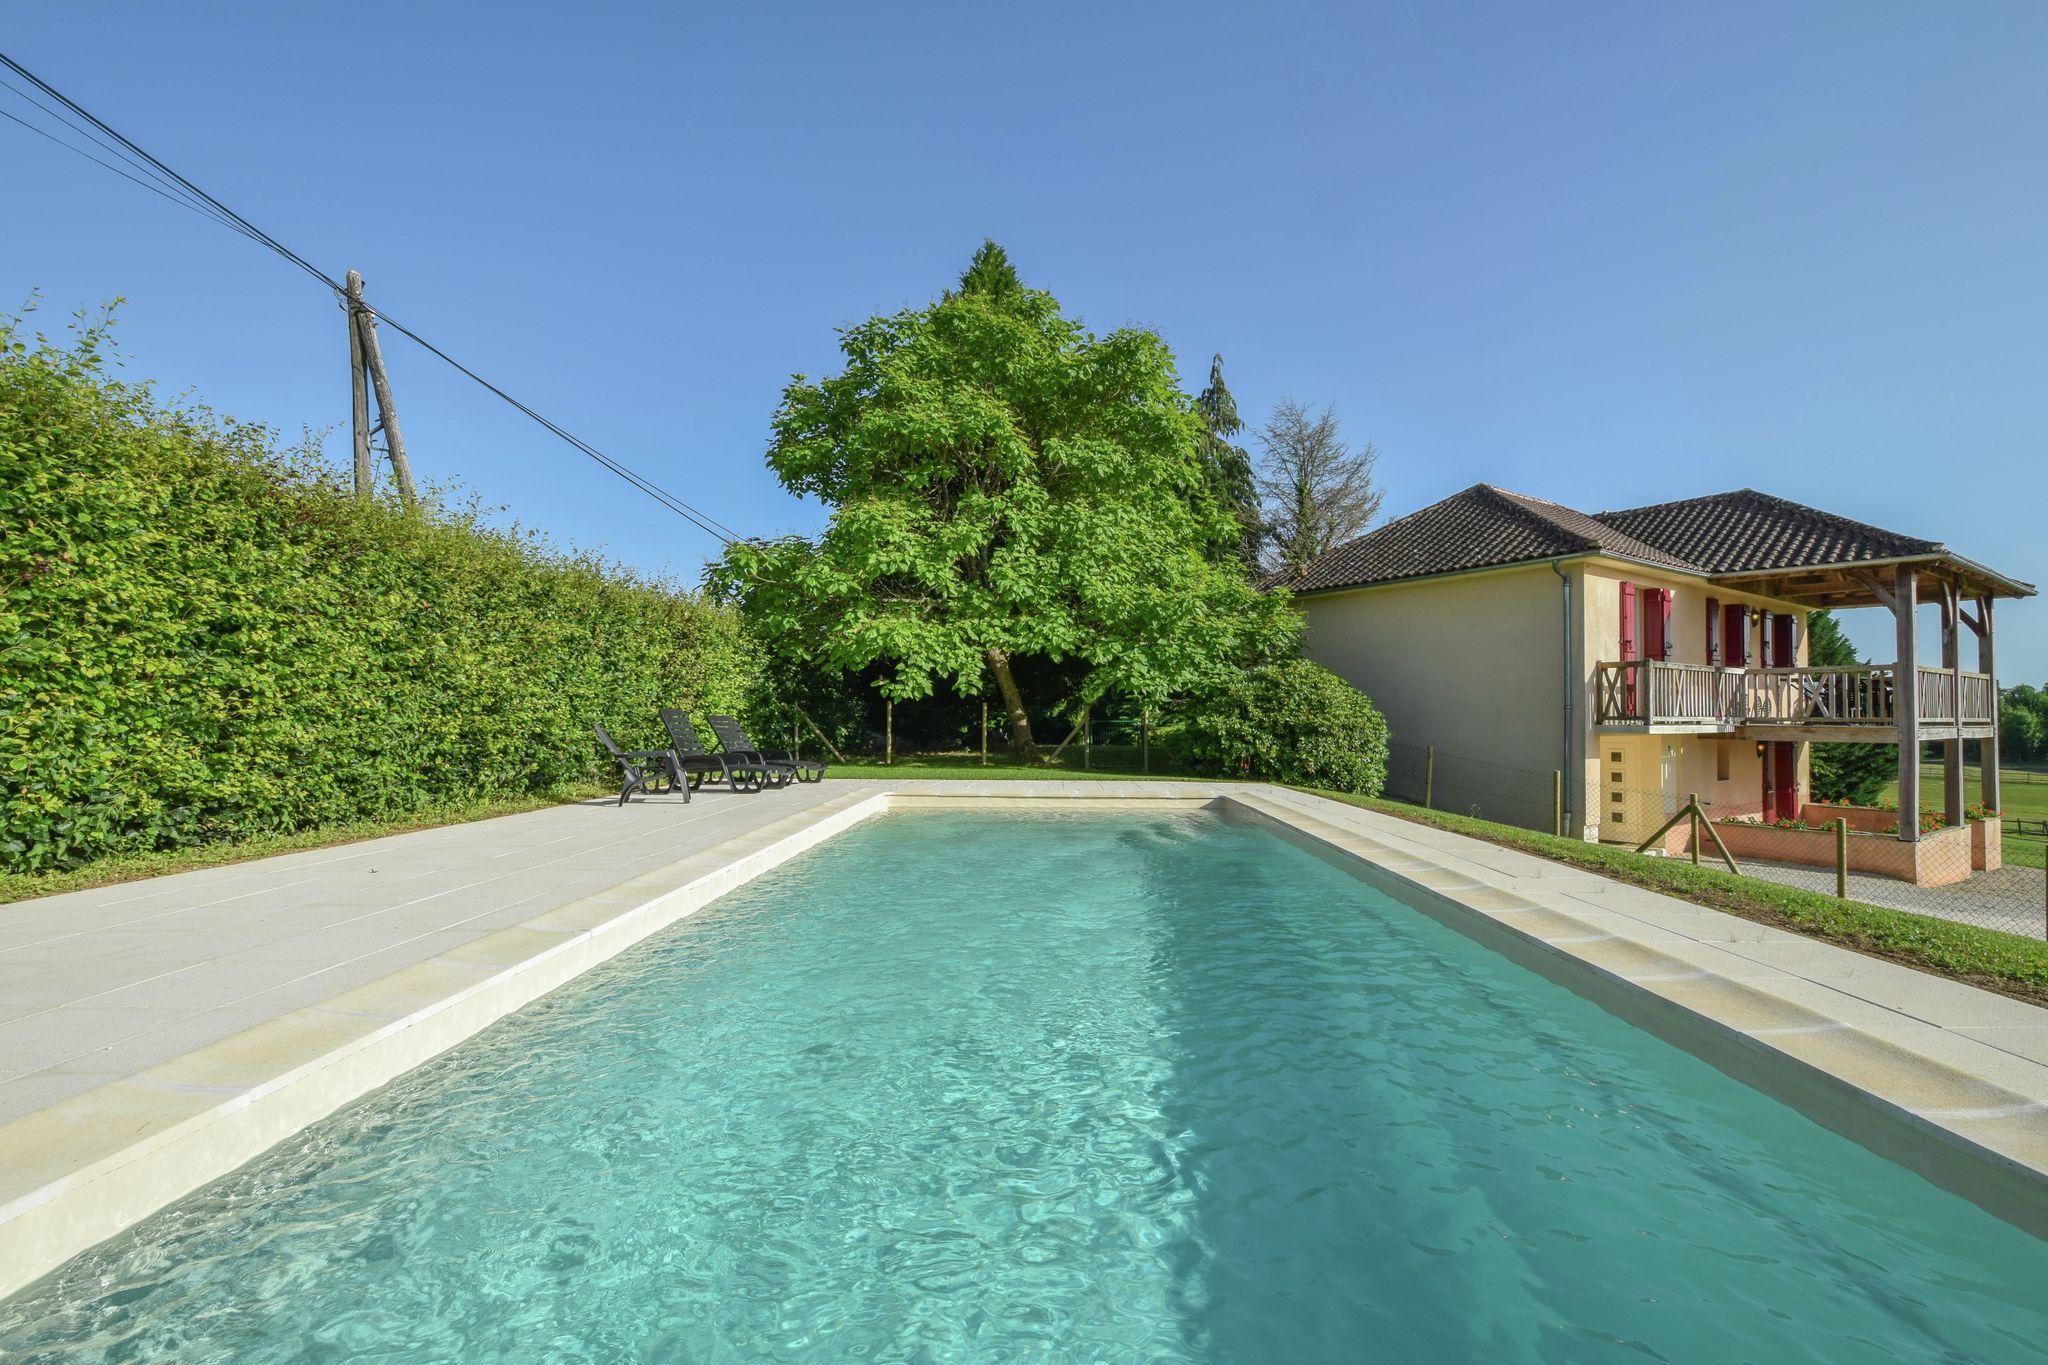 Maison individuelle avec une vue imprenable et une piscine privée chauffée.